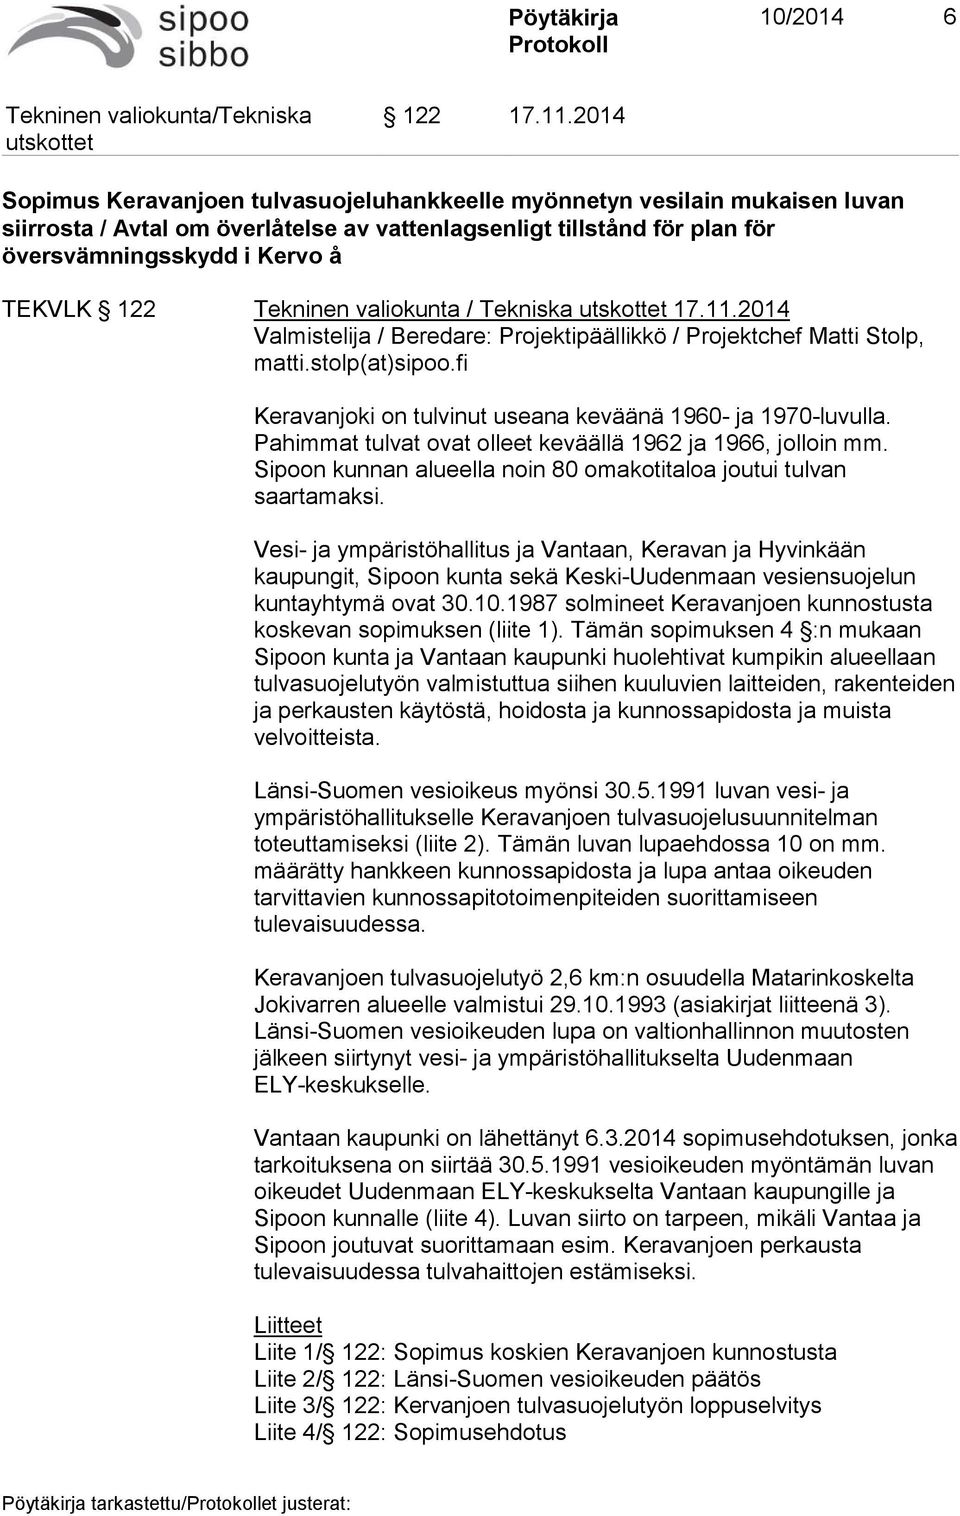 Tekninen valiokunta / Tekniska 17.11.2014 Valmistelija / Beredare: Projektipäällikkö / Projektchef Matti Stolp, matti.stolp(at)sipoo.fi Keravanjoki on tulvinut useana keväänä 1960- ja 1970-luvulla.